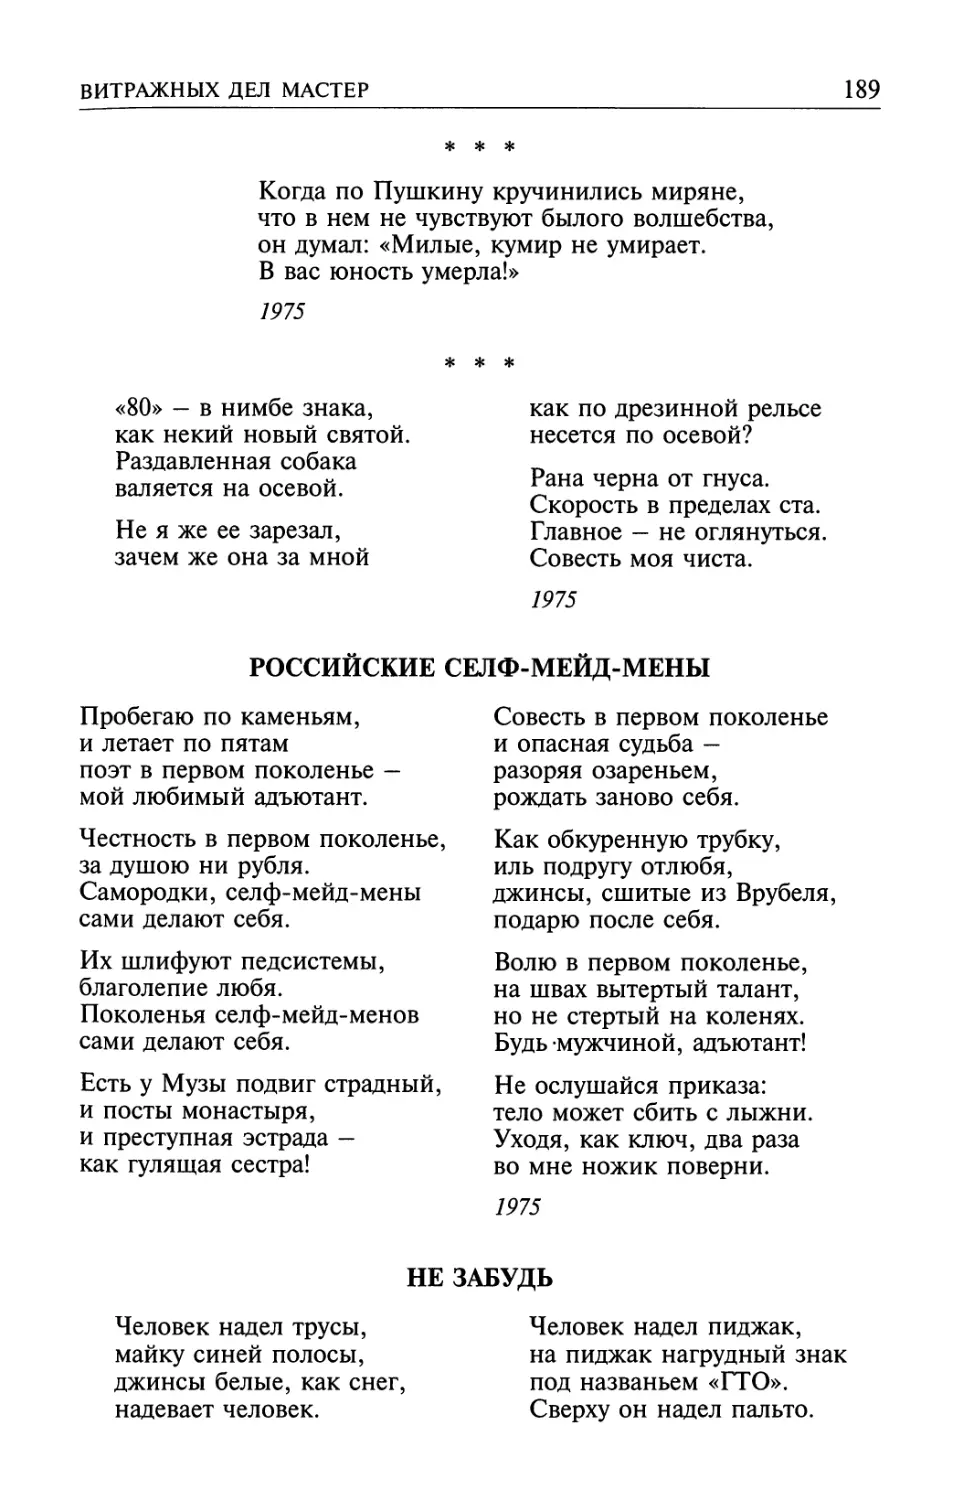 «Когда по Пушкину кручинились миряне...»
«80» — в нимбе знака...»
Российские селф-мейд-мены
Не забудь